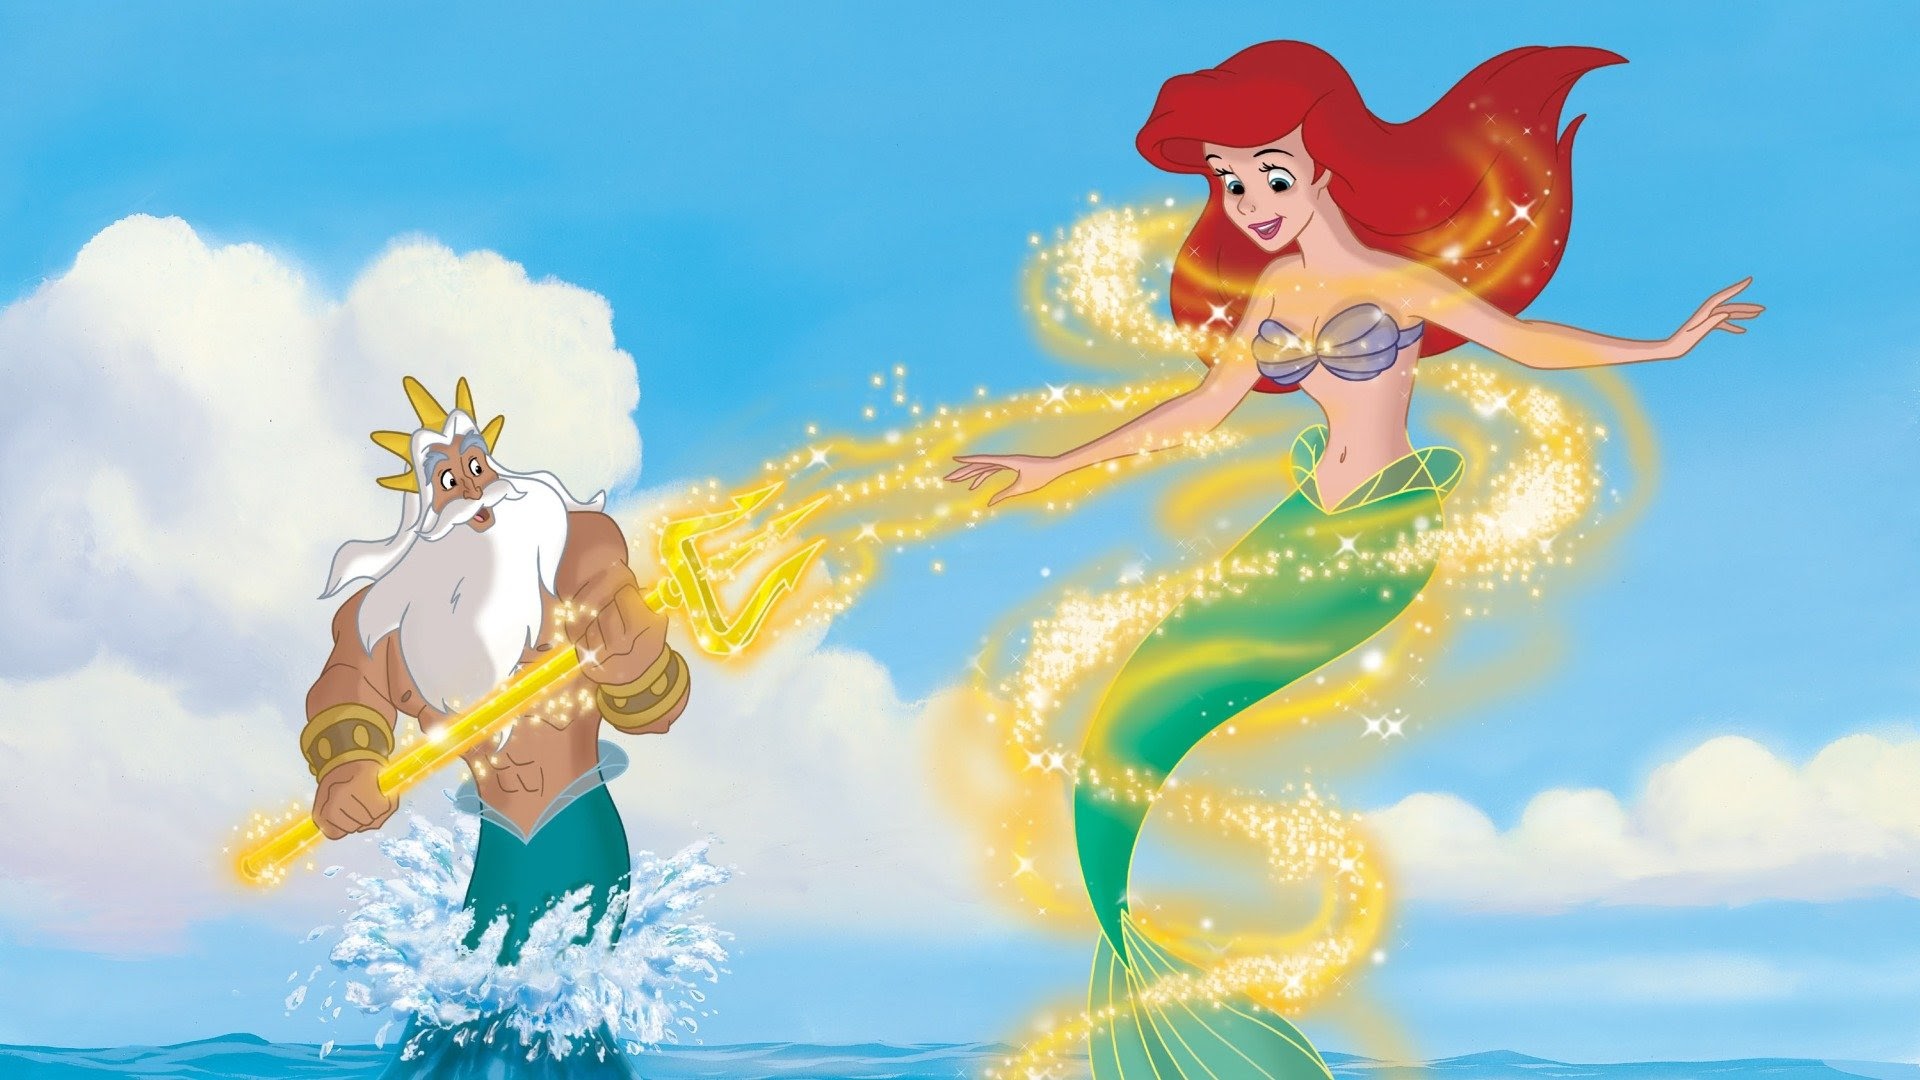 Little Mermaid II: Return to the Sea - Movies on Google Play